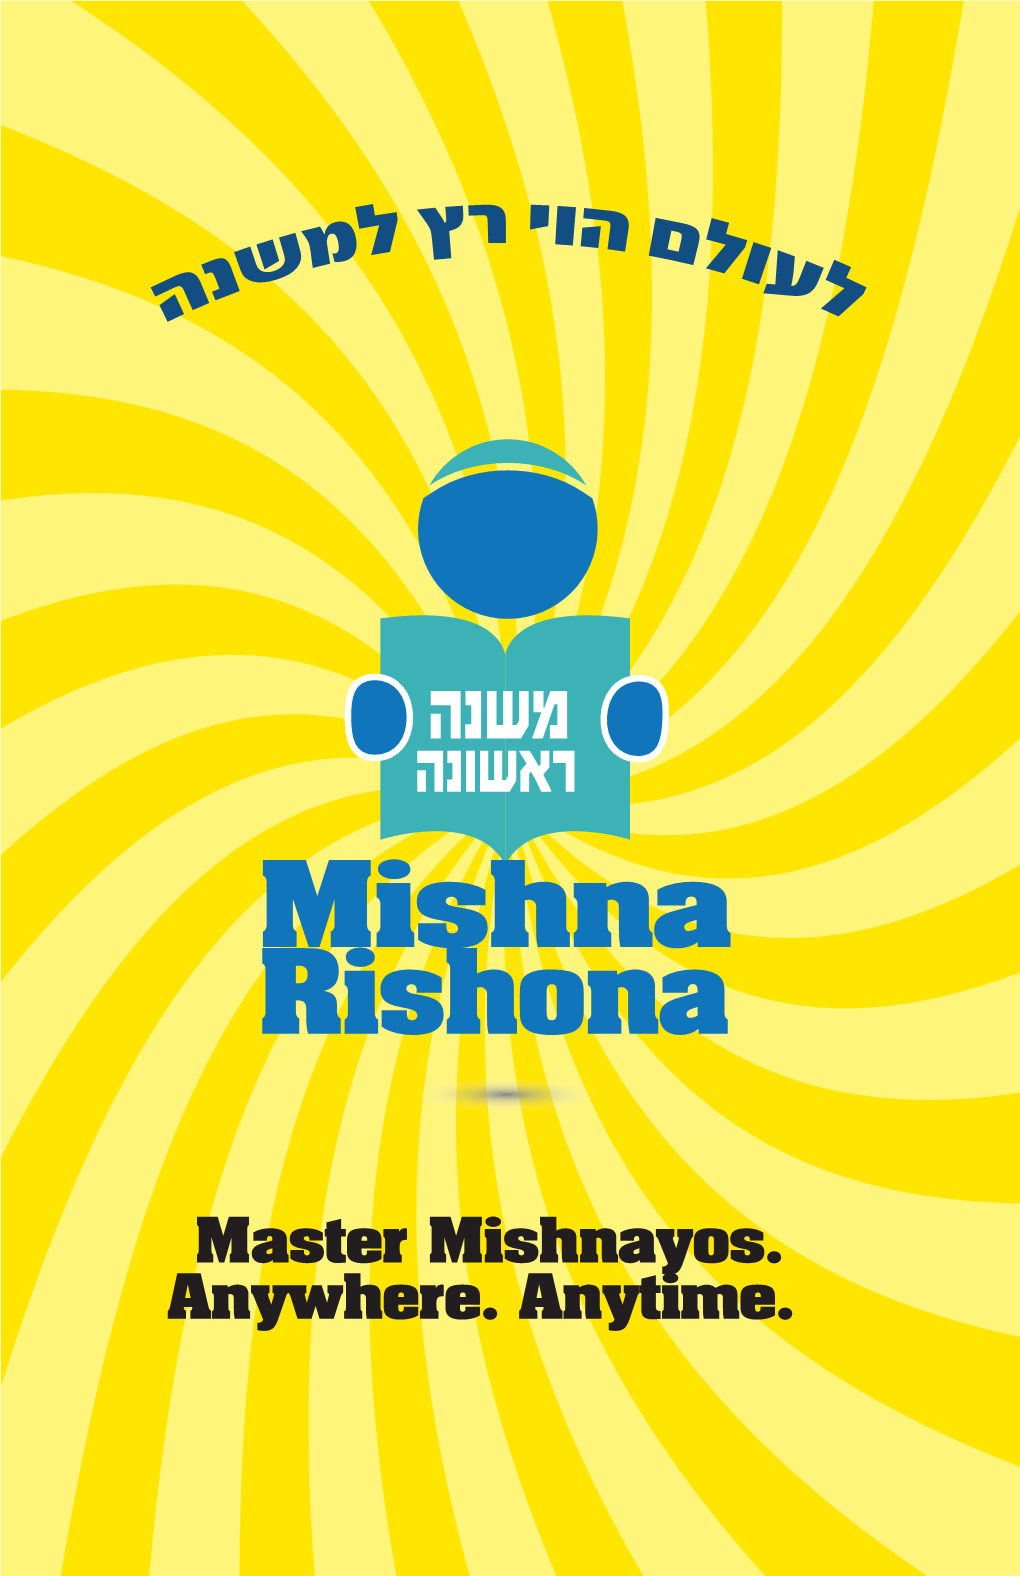 Mishna Rishona Brochure